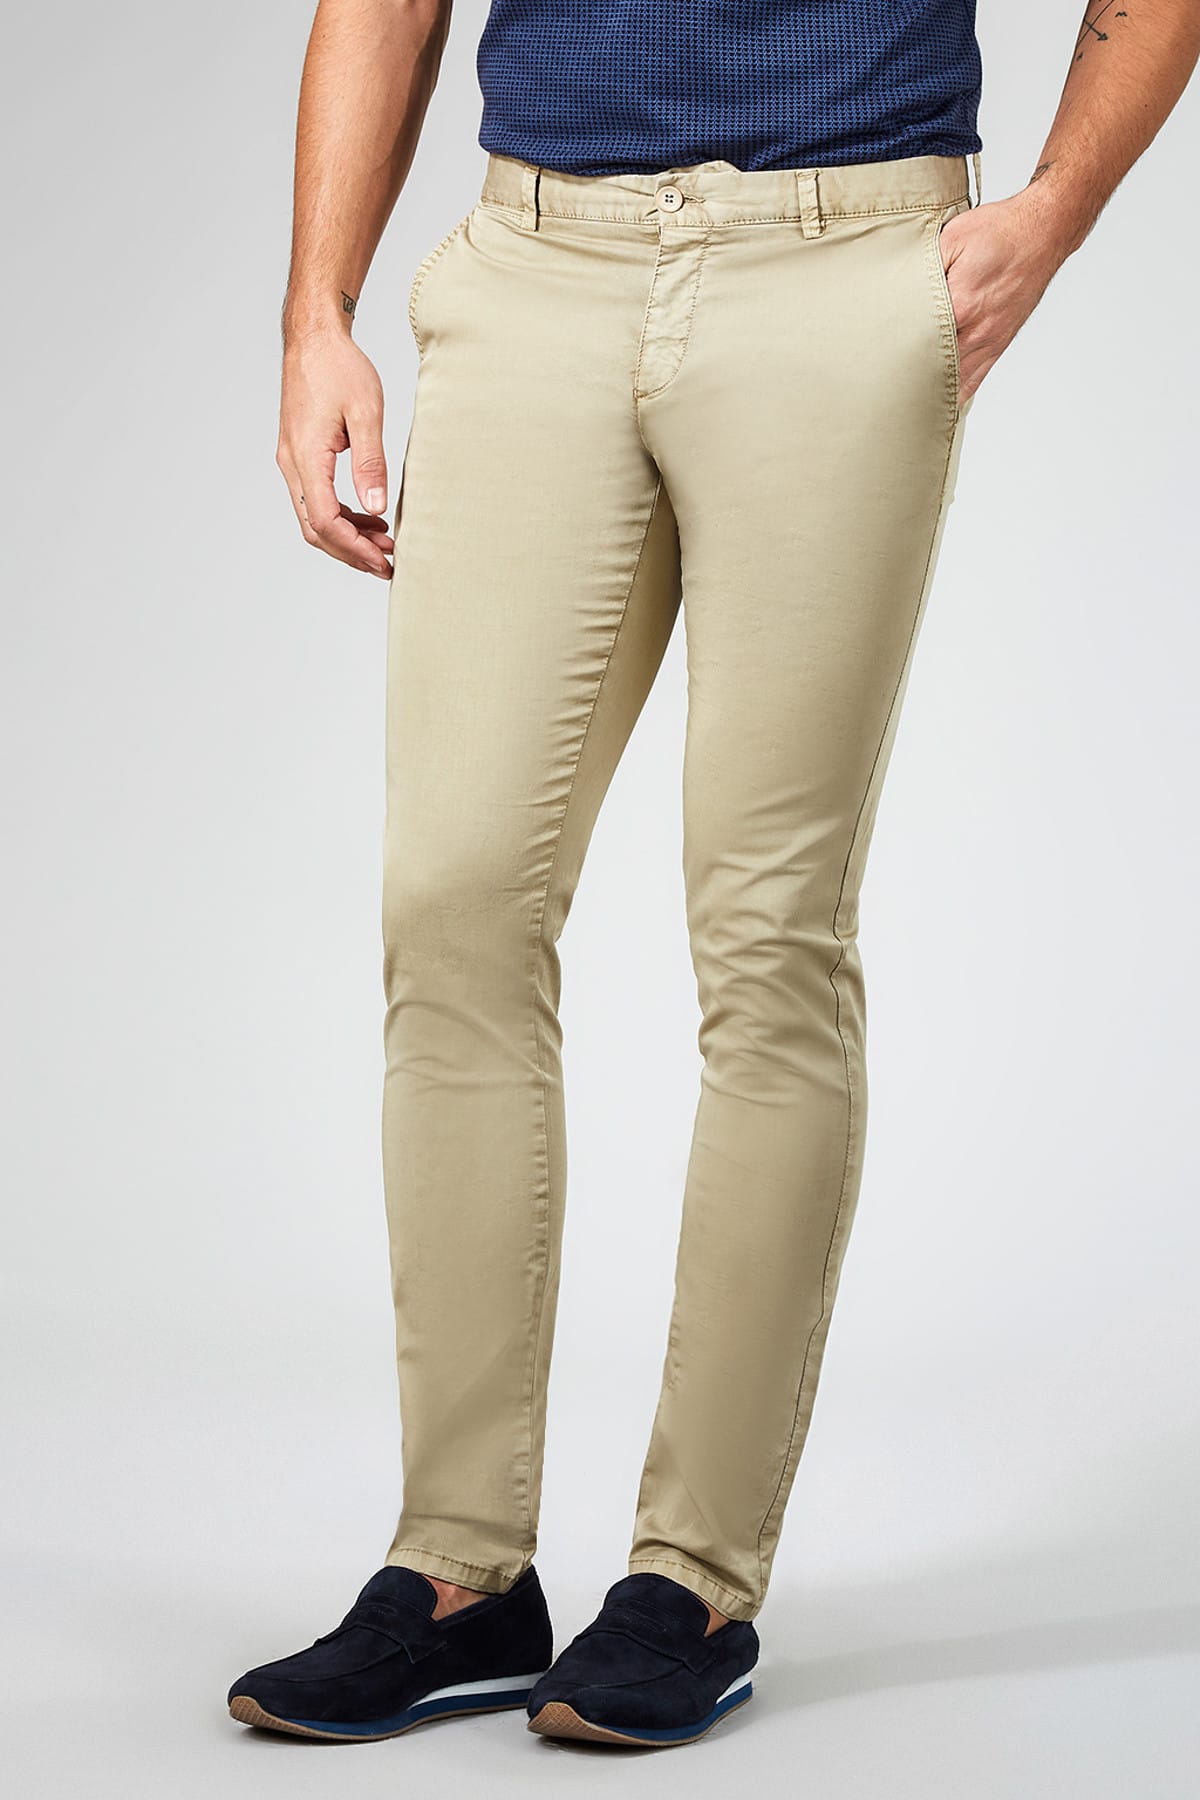 Men's Side Pocket Pants - Beren Store